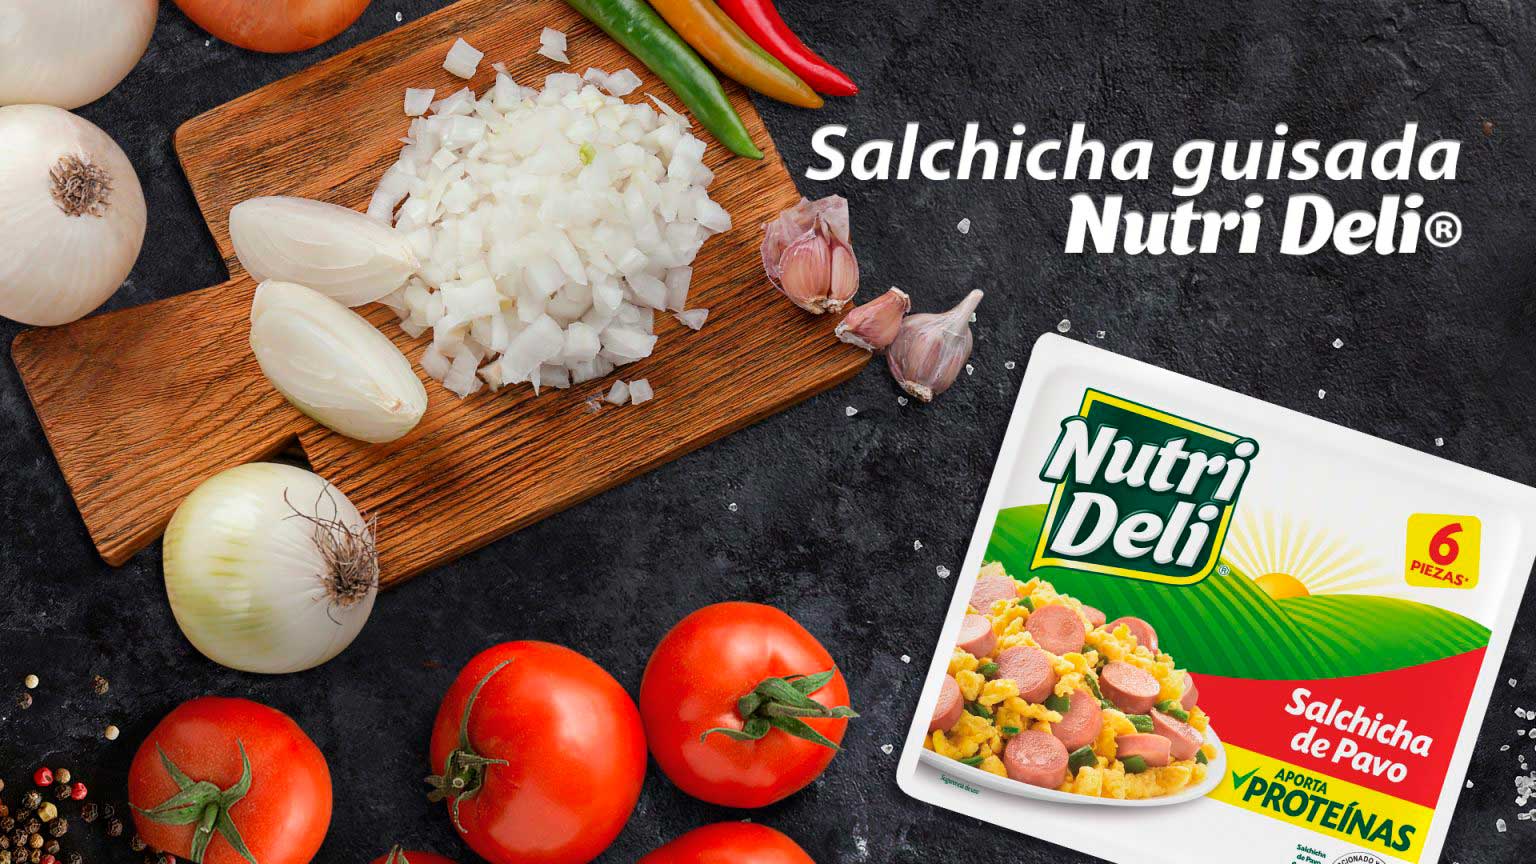 Salchichas Guisada Nutri Deli®